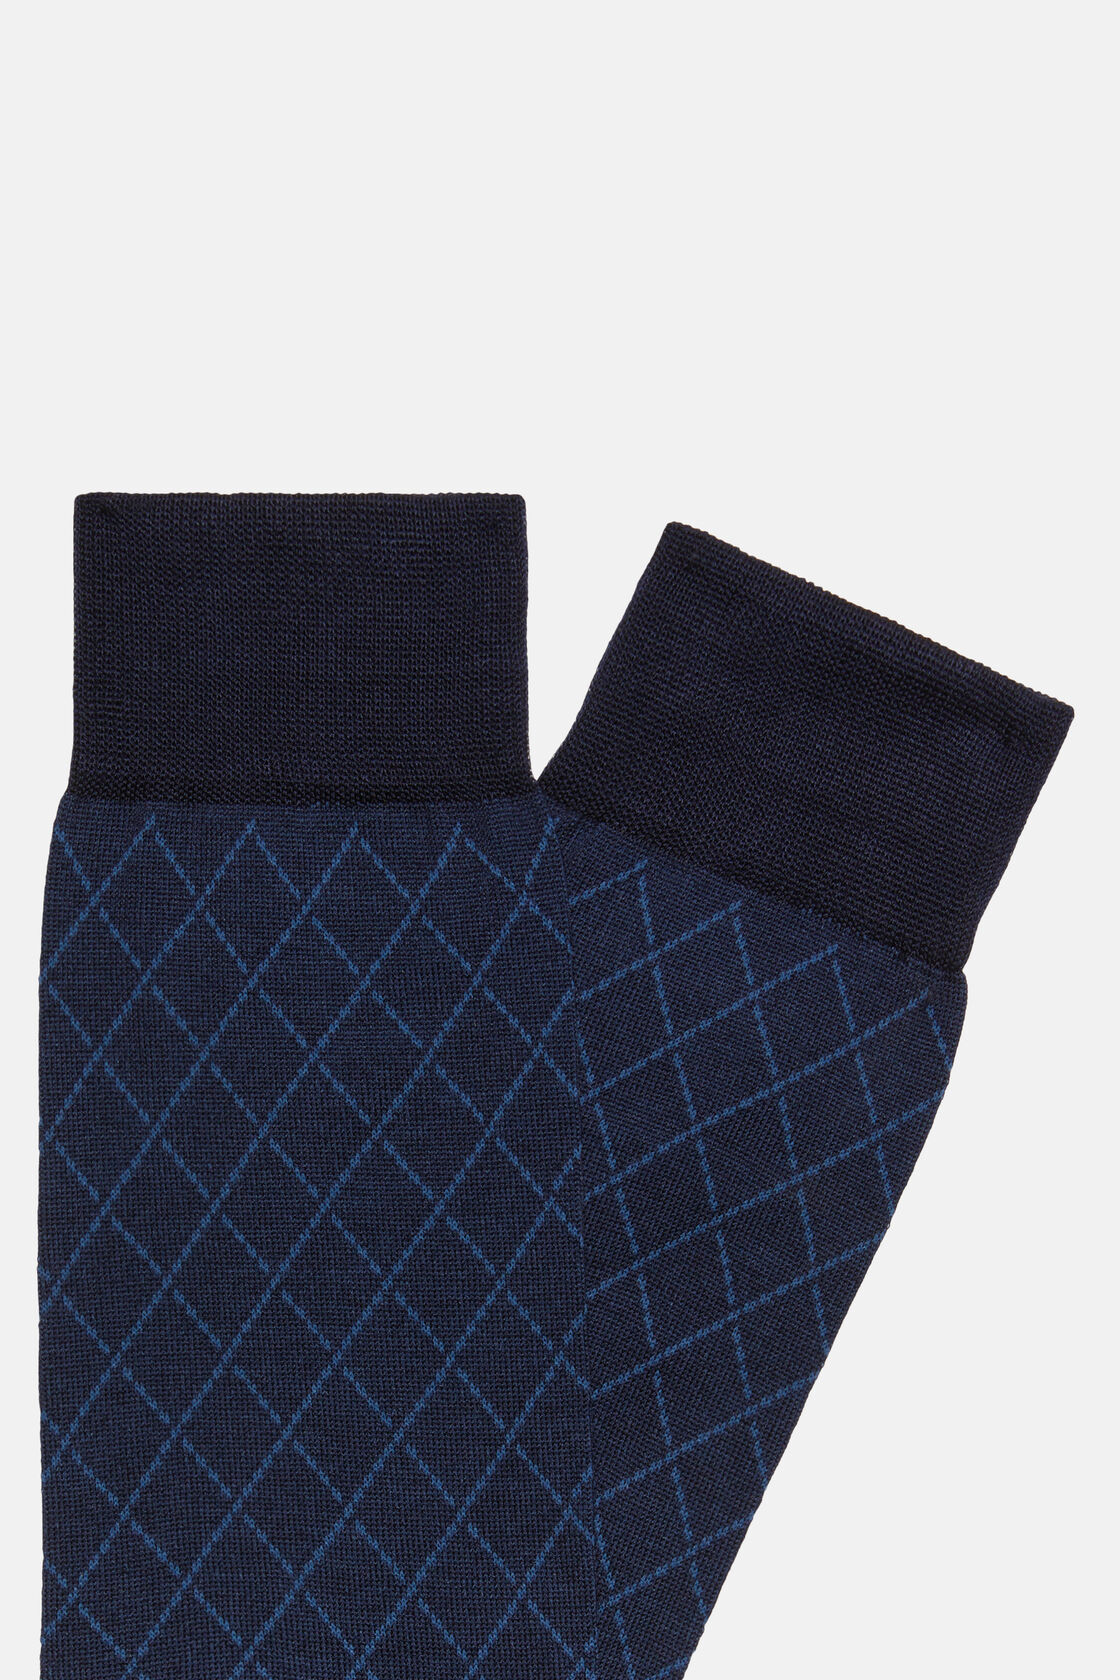 Meias com padrão geométrico em mistura de algodão, Navy blue, hi-res